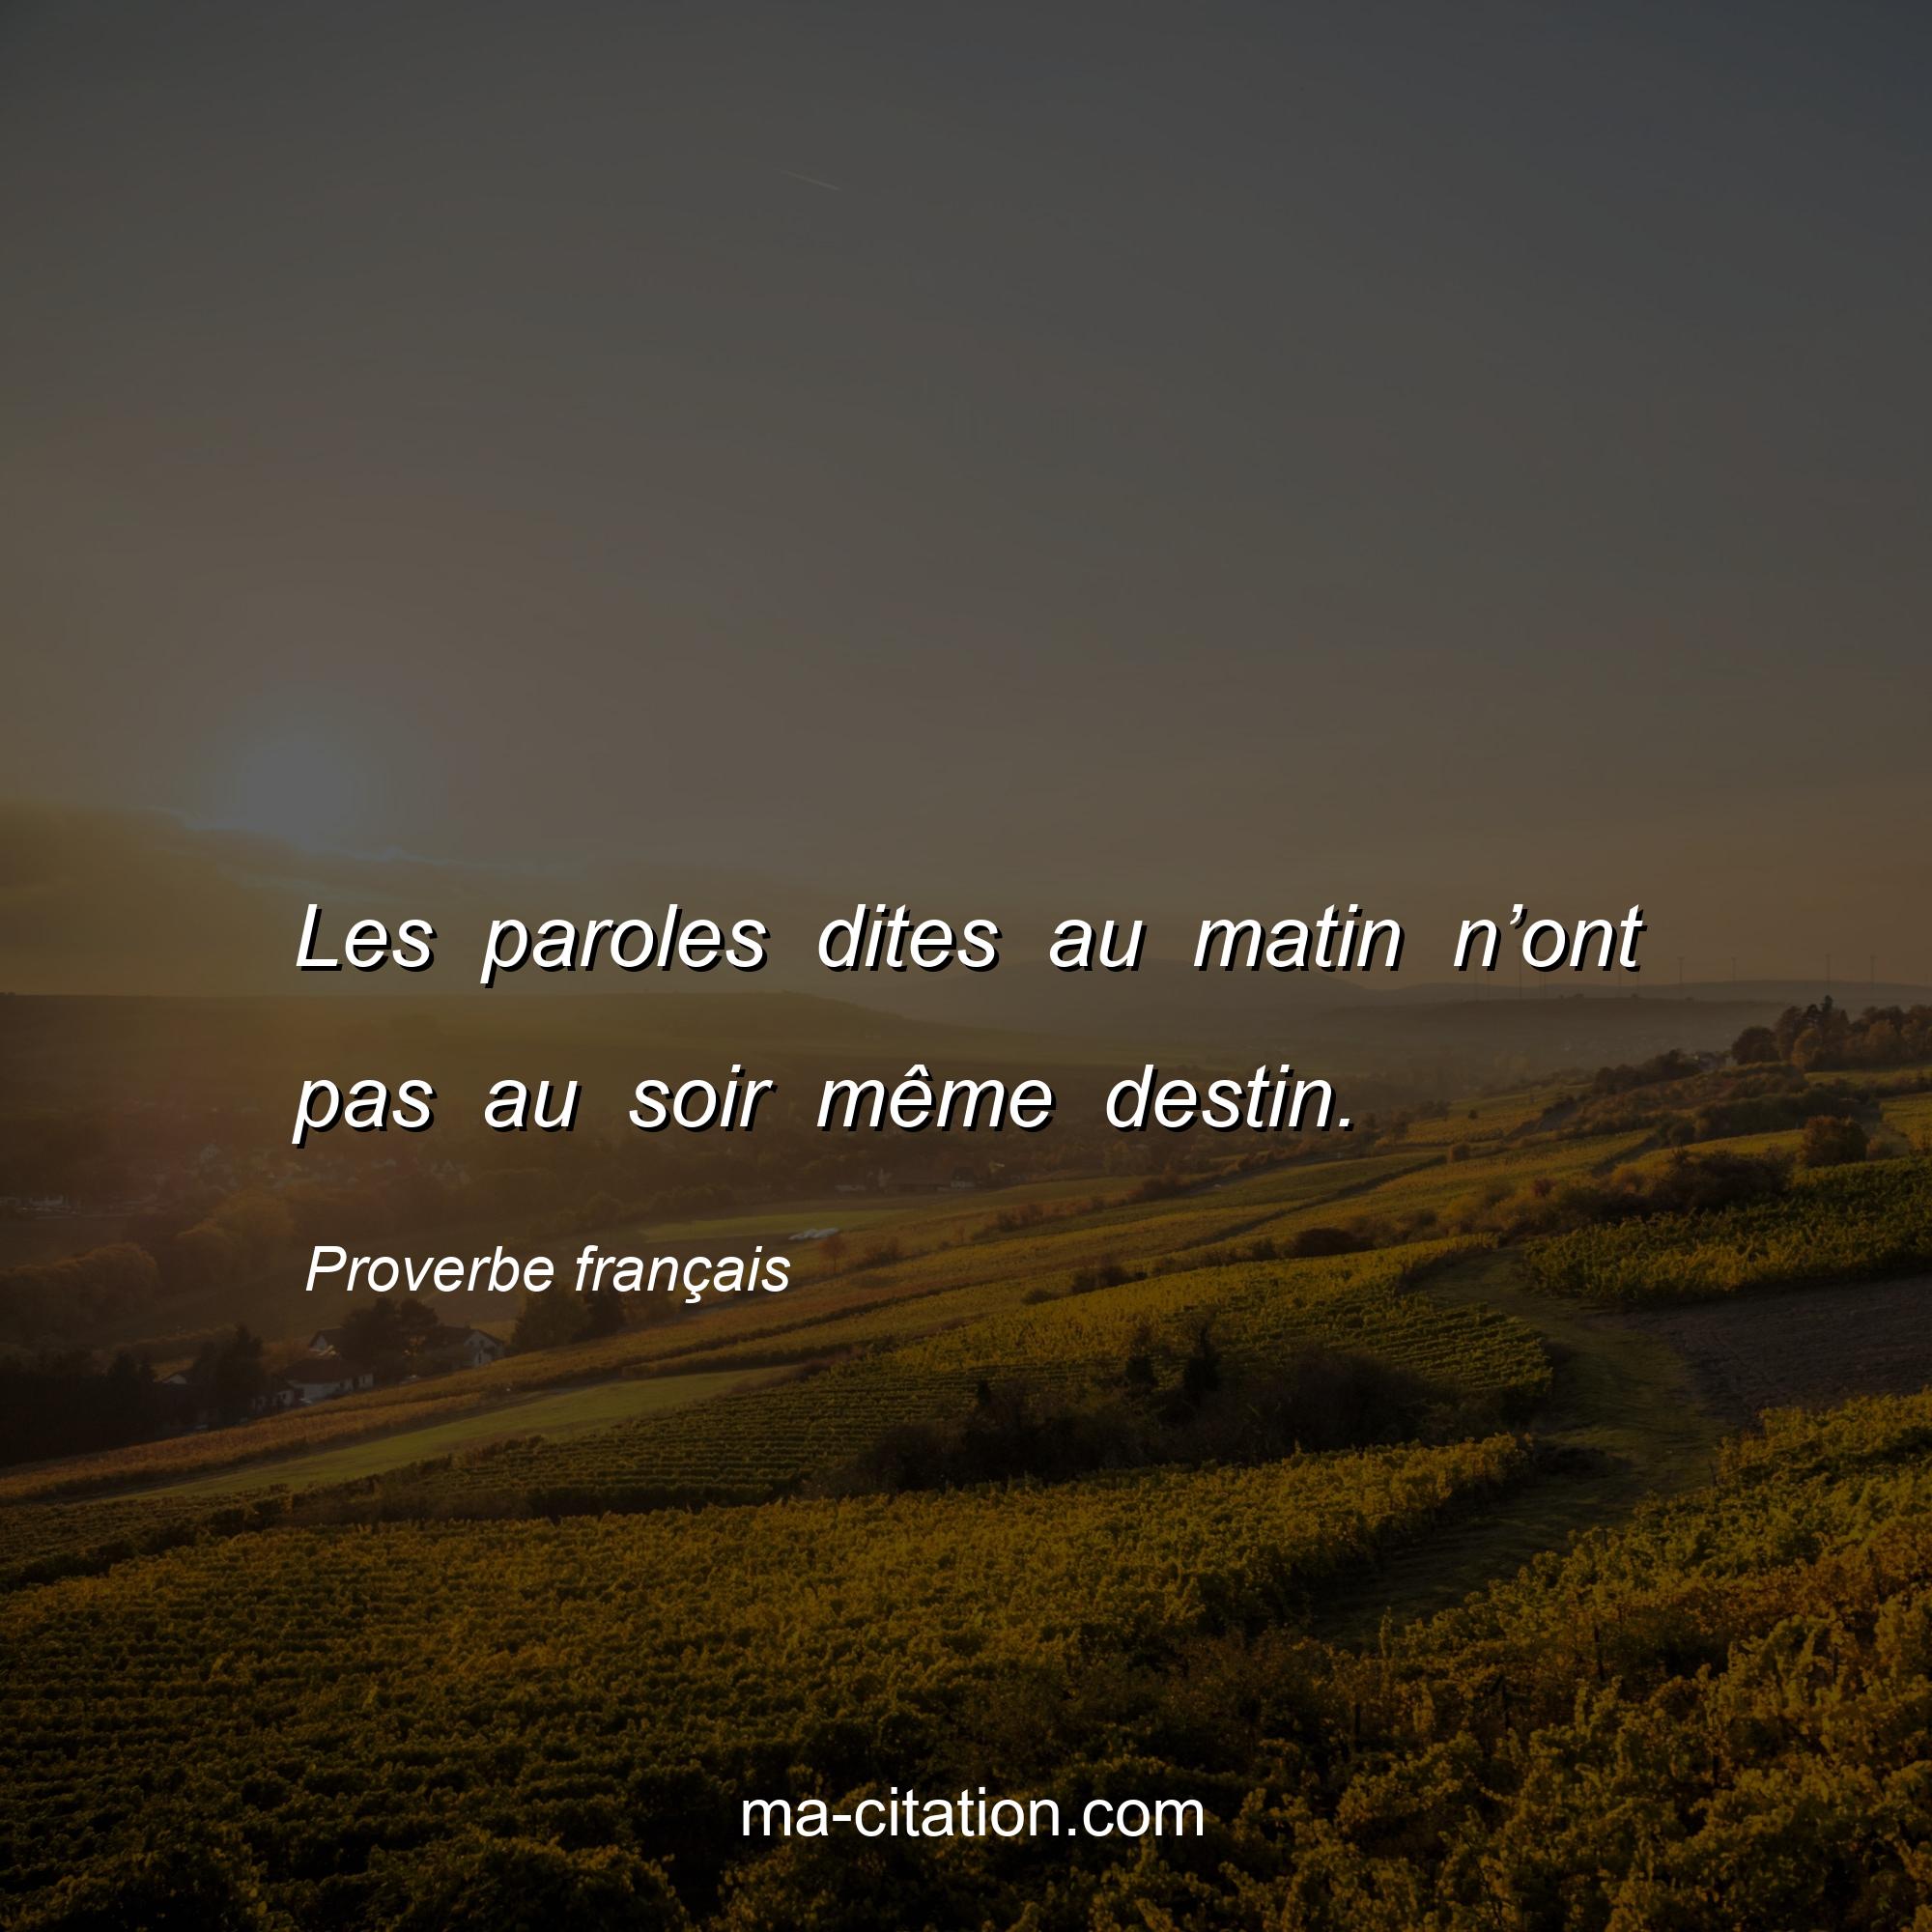 Proverbe français : Les paroles dites au matin n’ont pas au soir même destin.